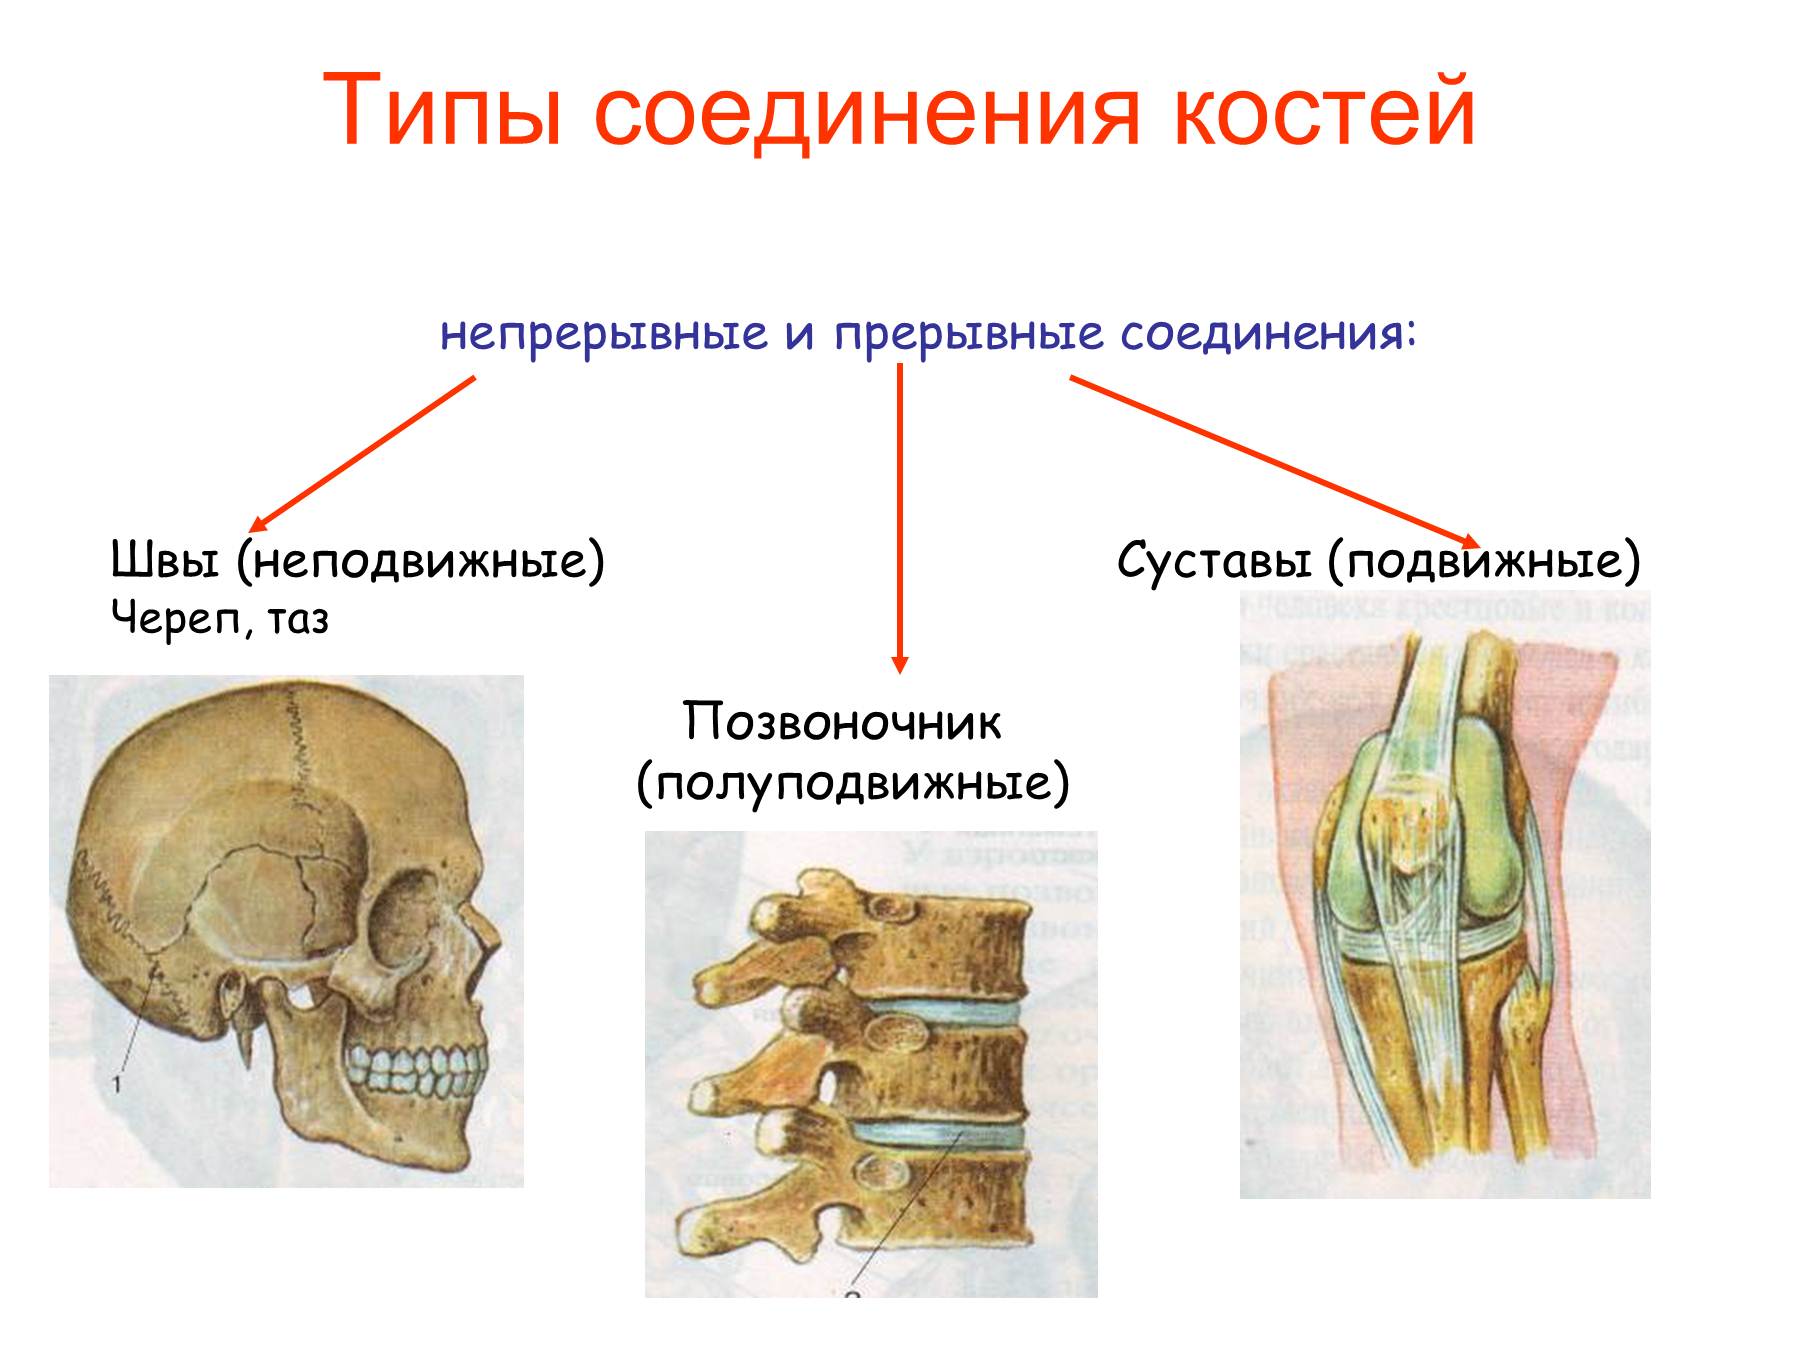 Кости полуподвижное соединение пример. Соединение костей человека непрерывные прерывные. Подвижное полуподвижное и неподвижное соединение костей. Соединения костей непрерывные прерывные симфизы. Неподвижные полуподвижные и подвижные соединения костей.